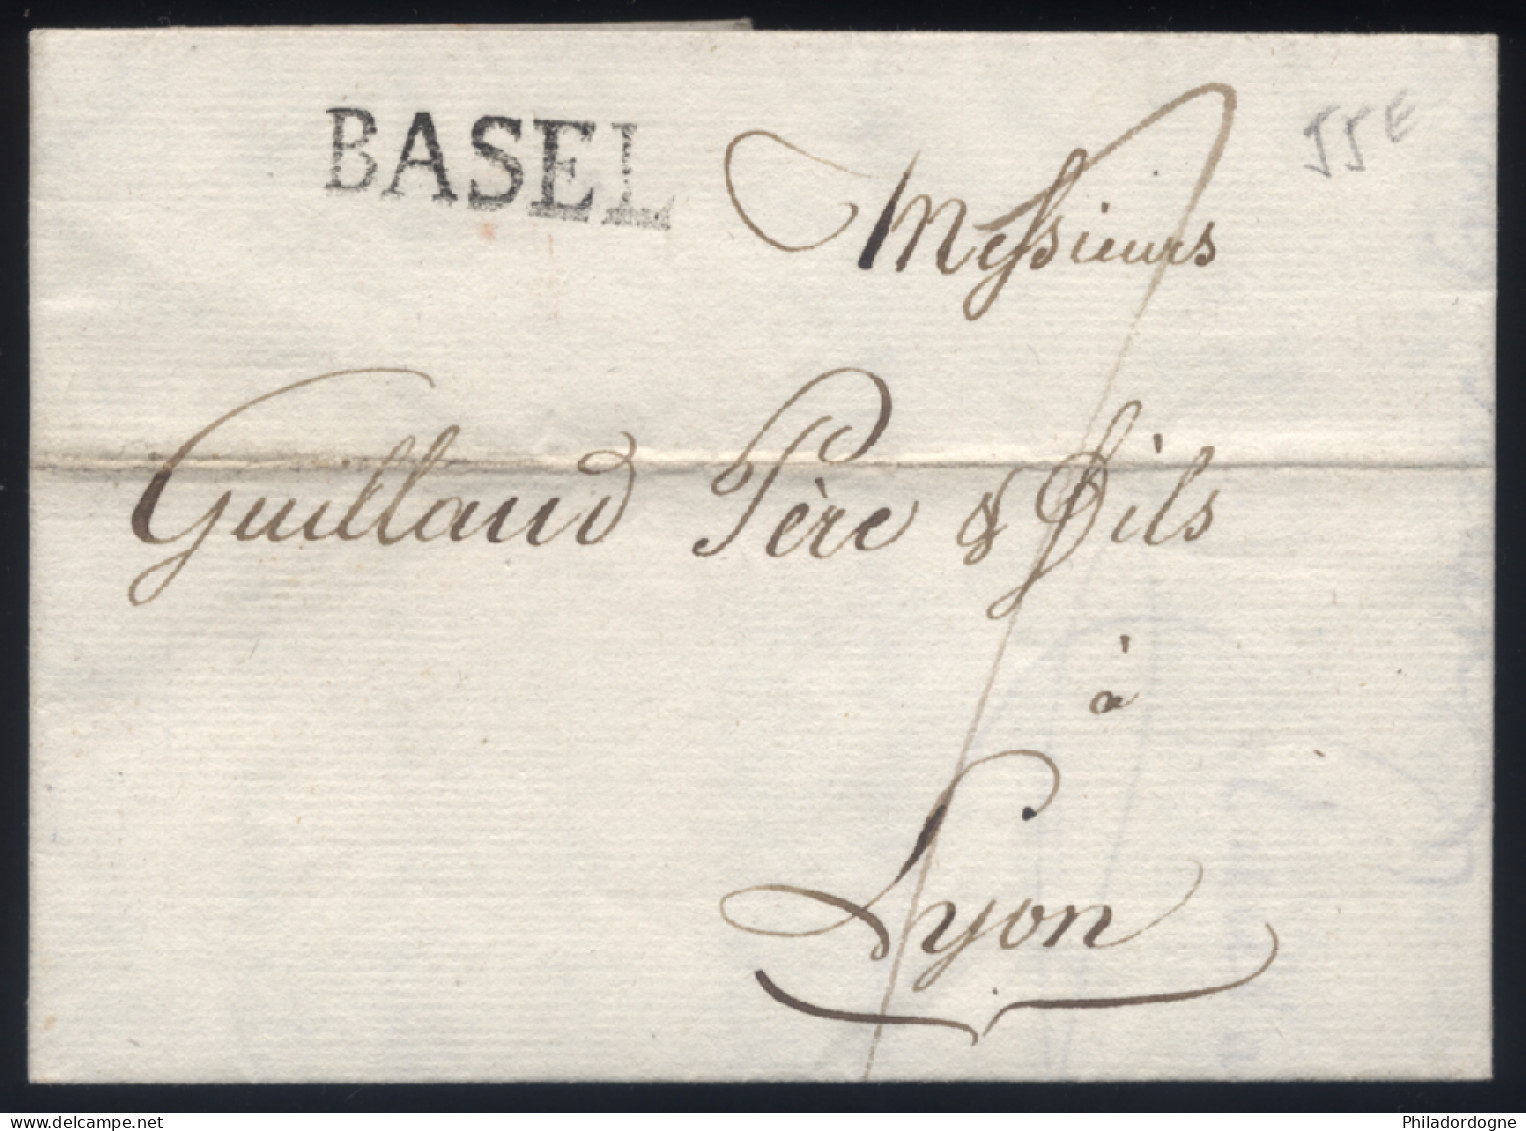 LaC Griffe Basel Pour Lyon - 08/1806 - ...-1845 Vorphilatelie